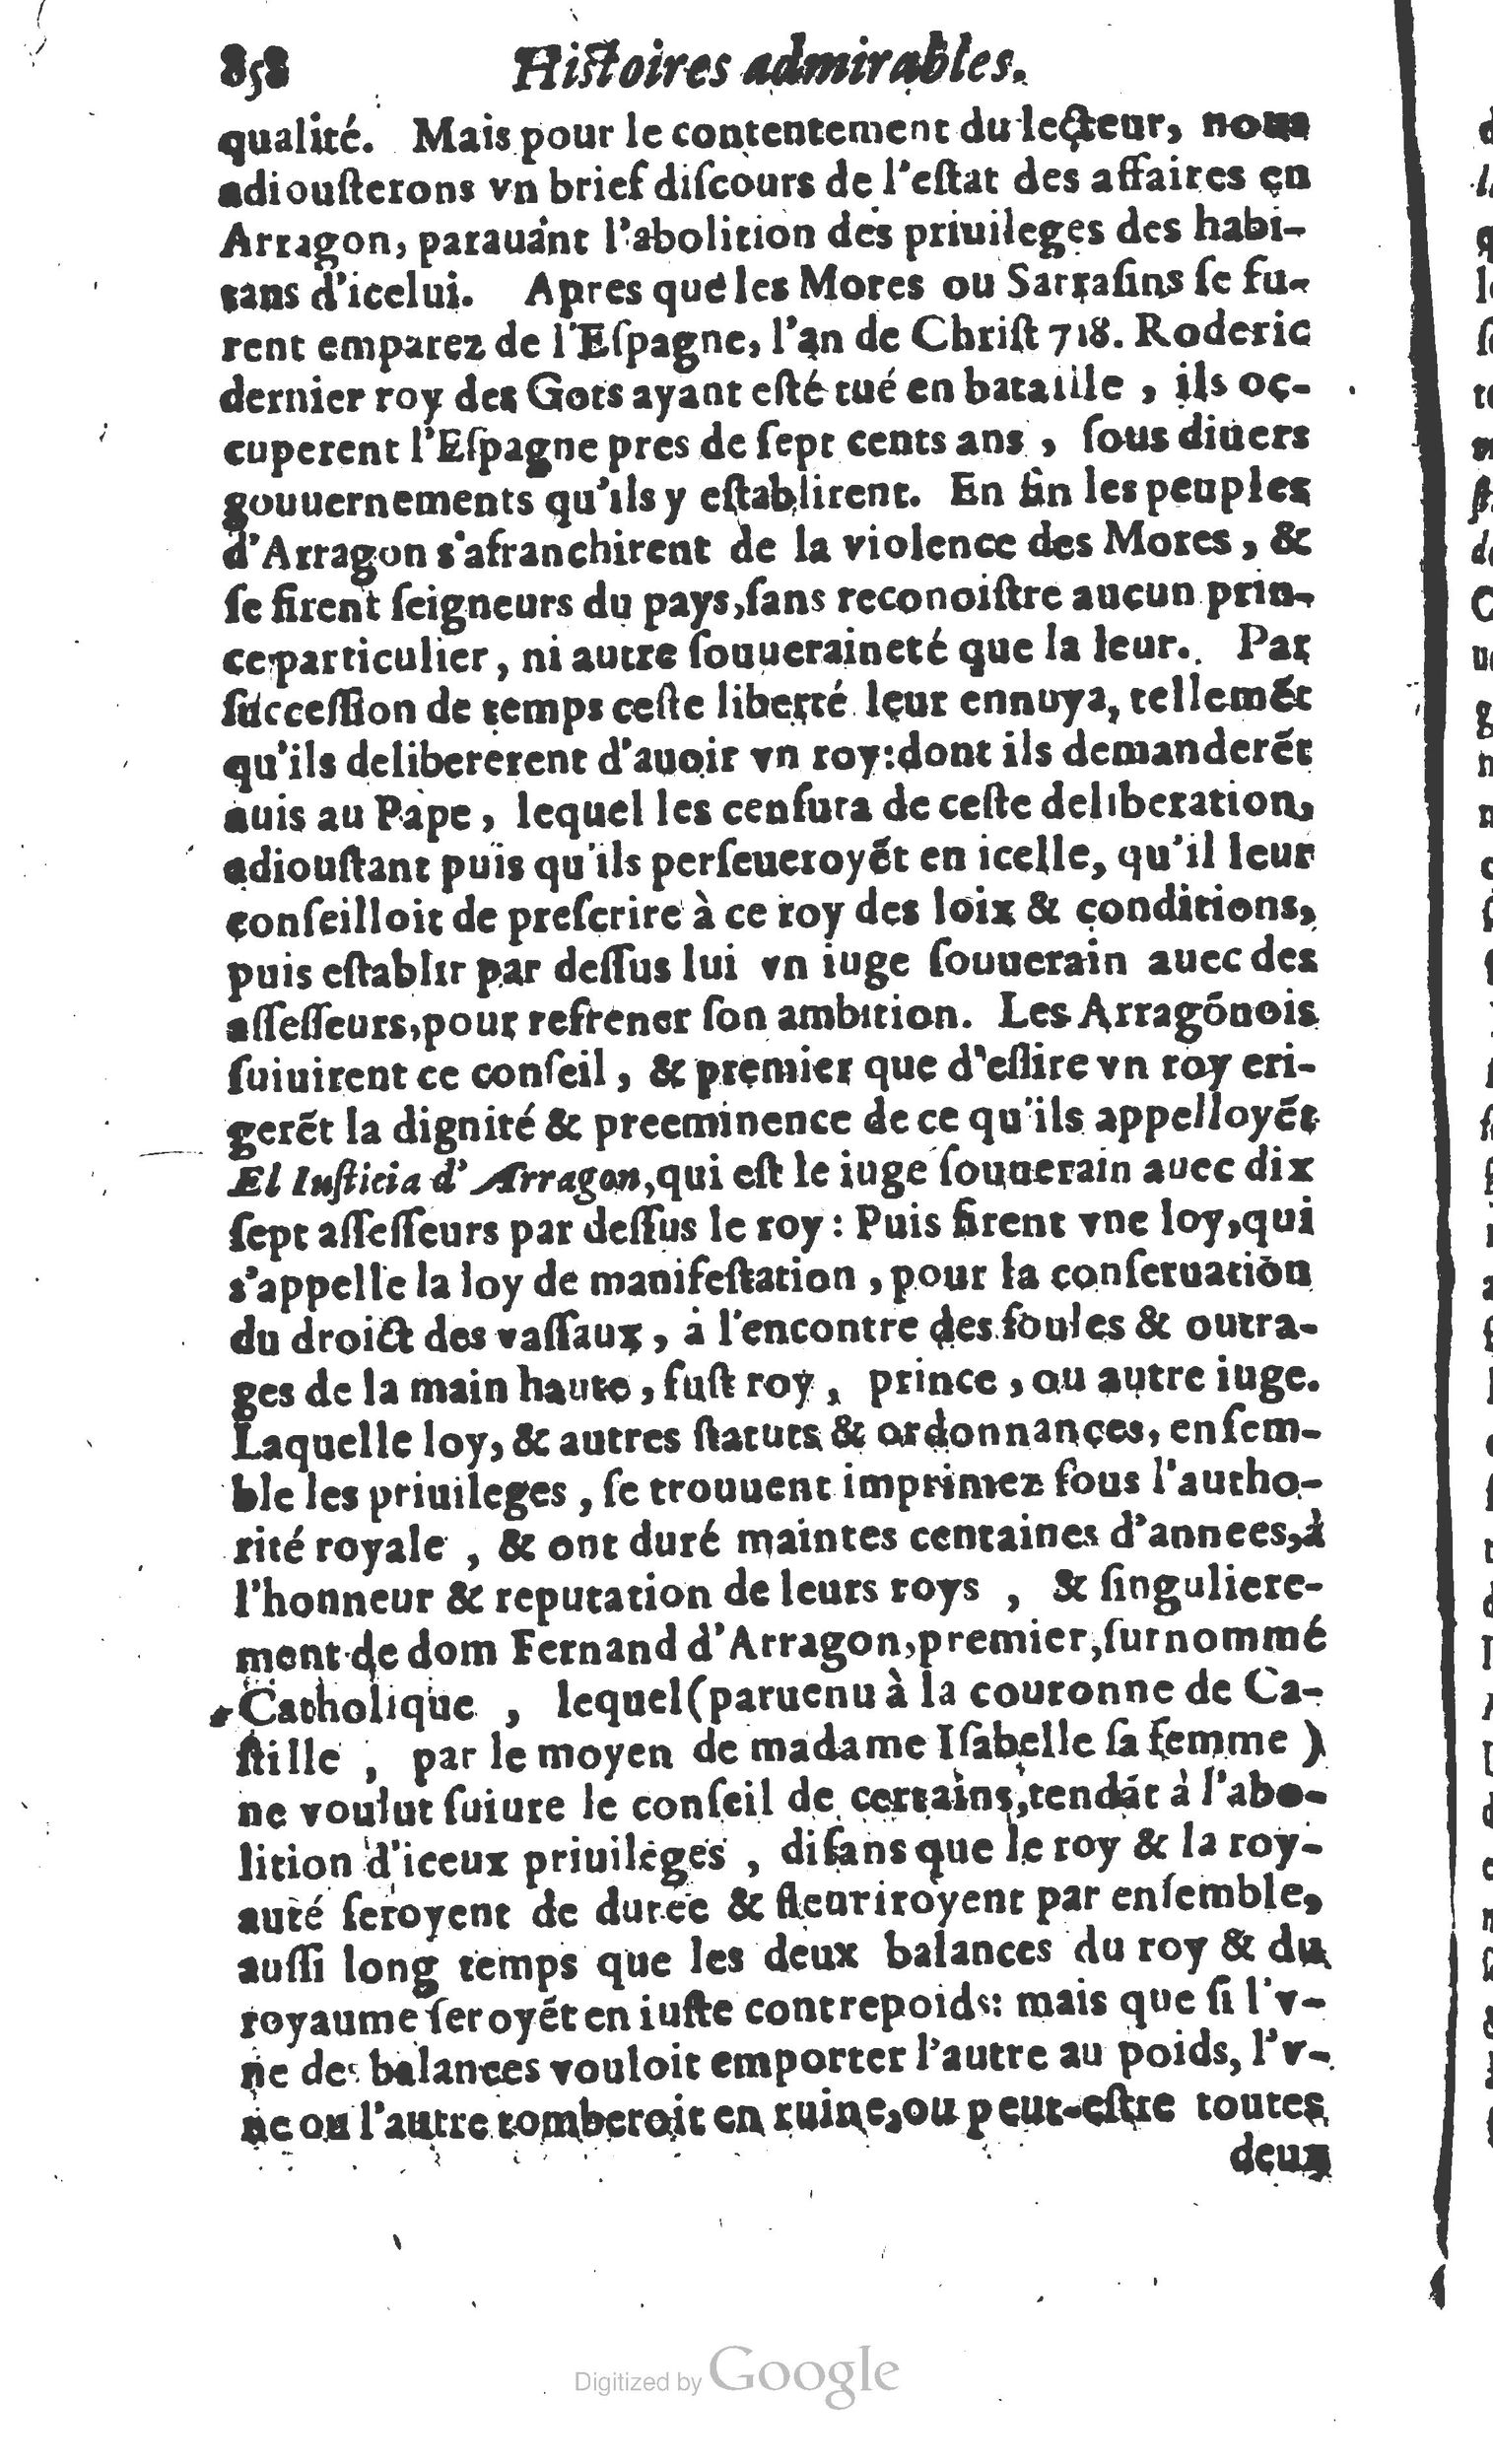 1610 Trésor d’histoires admirables et mémorables de nostre temps Marceau Princeton_Page_0879.jpg